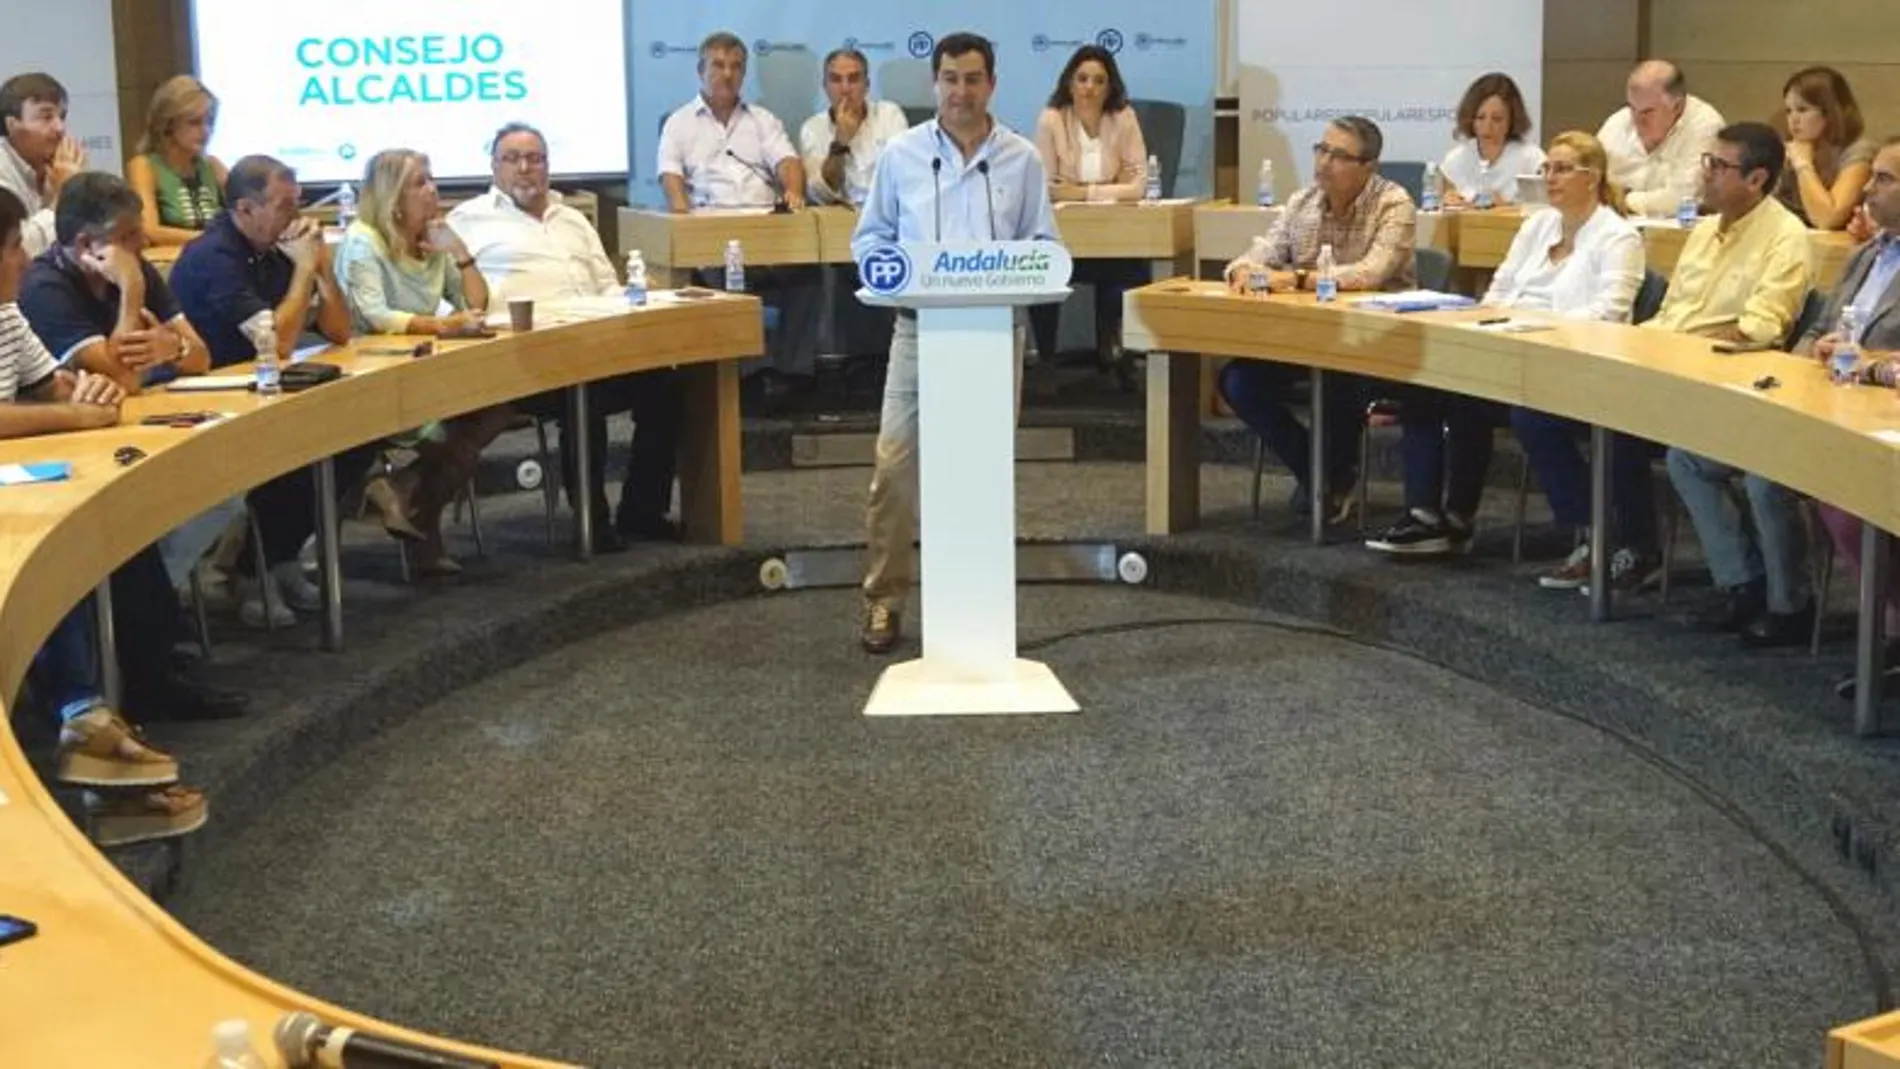 La situación de las viviendas de uso turístico o los planes de empleo anunciados por la Junta fueron algunos de los temas que el PP abordó ayer en la reunión del Consejo de Alcaldes en Torremolinos (Málaga)/ Foto: La Razón